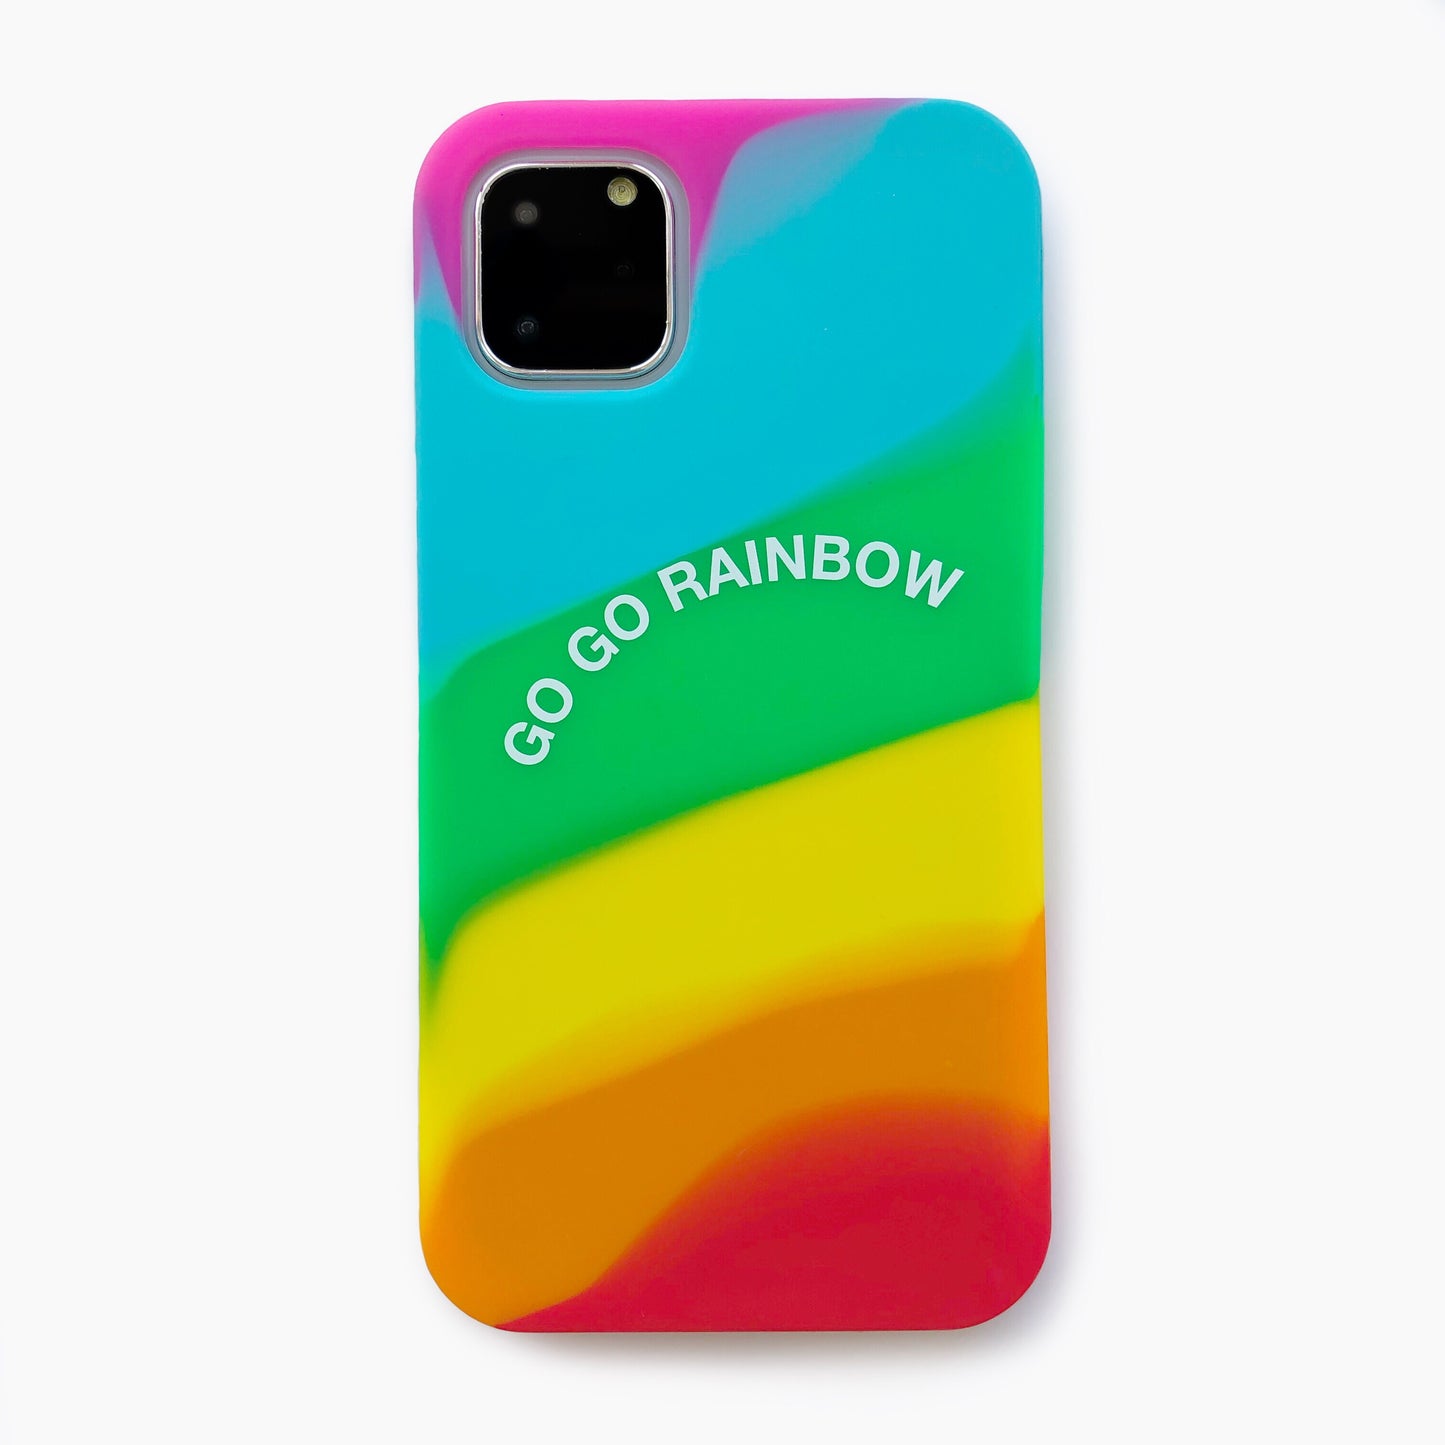 iPhone 11 Pro Max Simple Case - Go Go Rainbow (Bright)